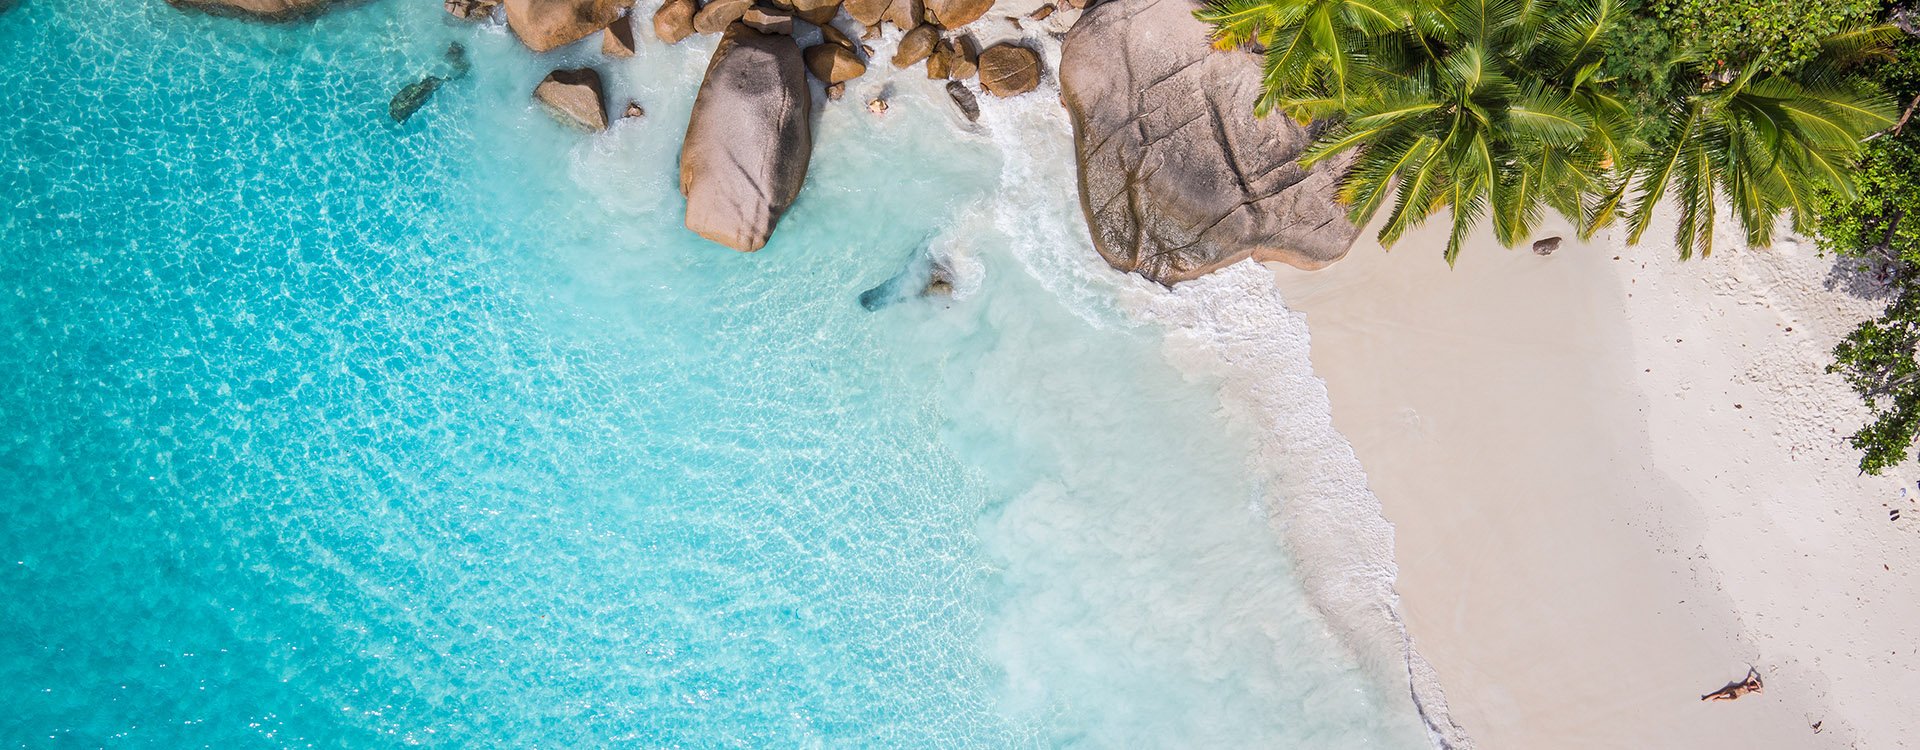 Seychelles famous shark beach